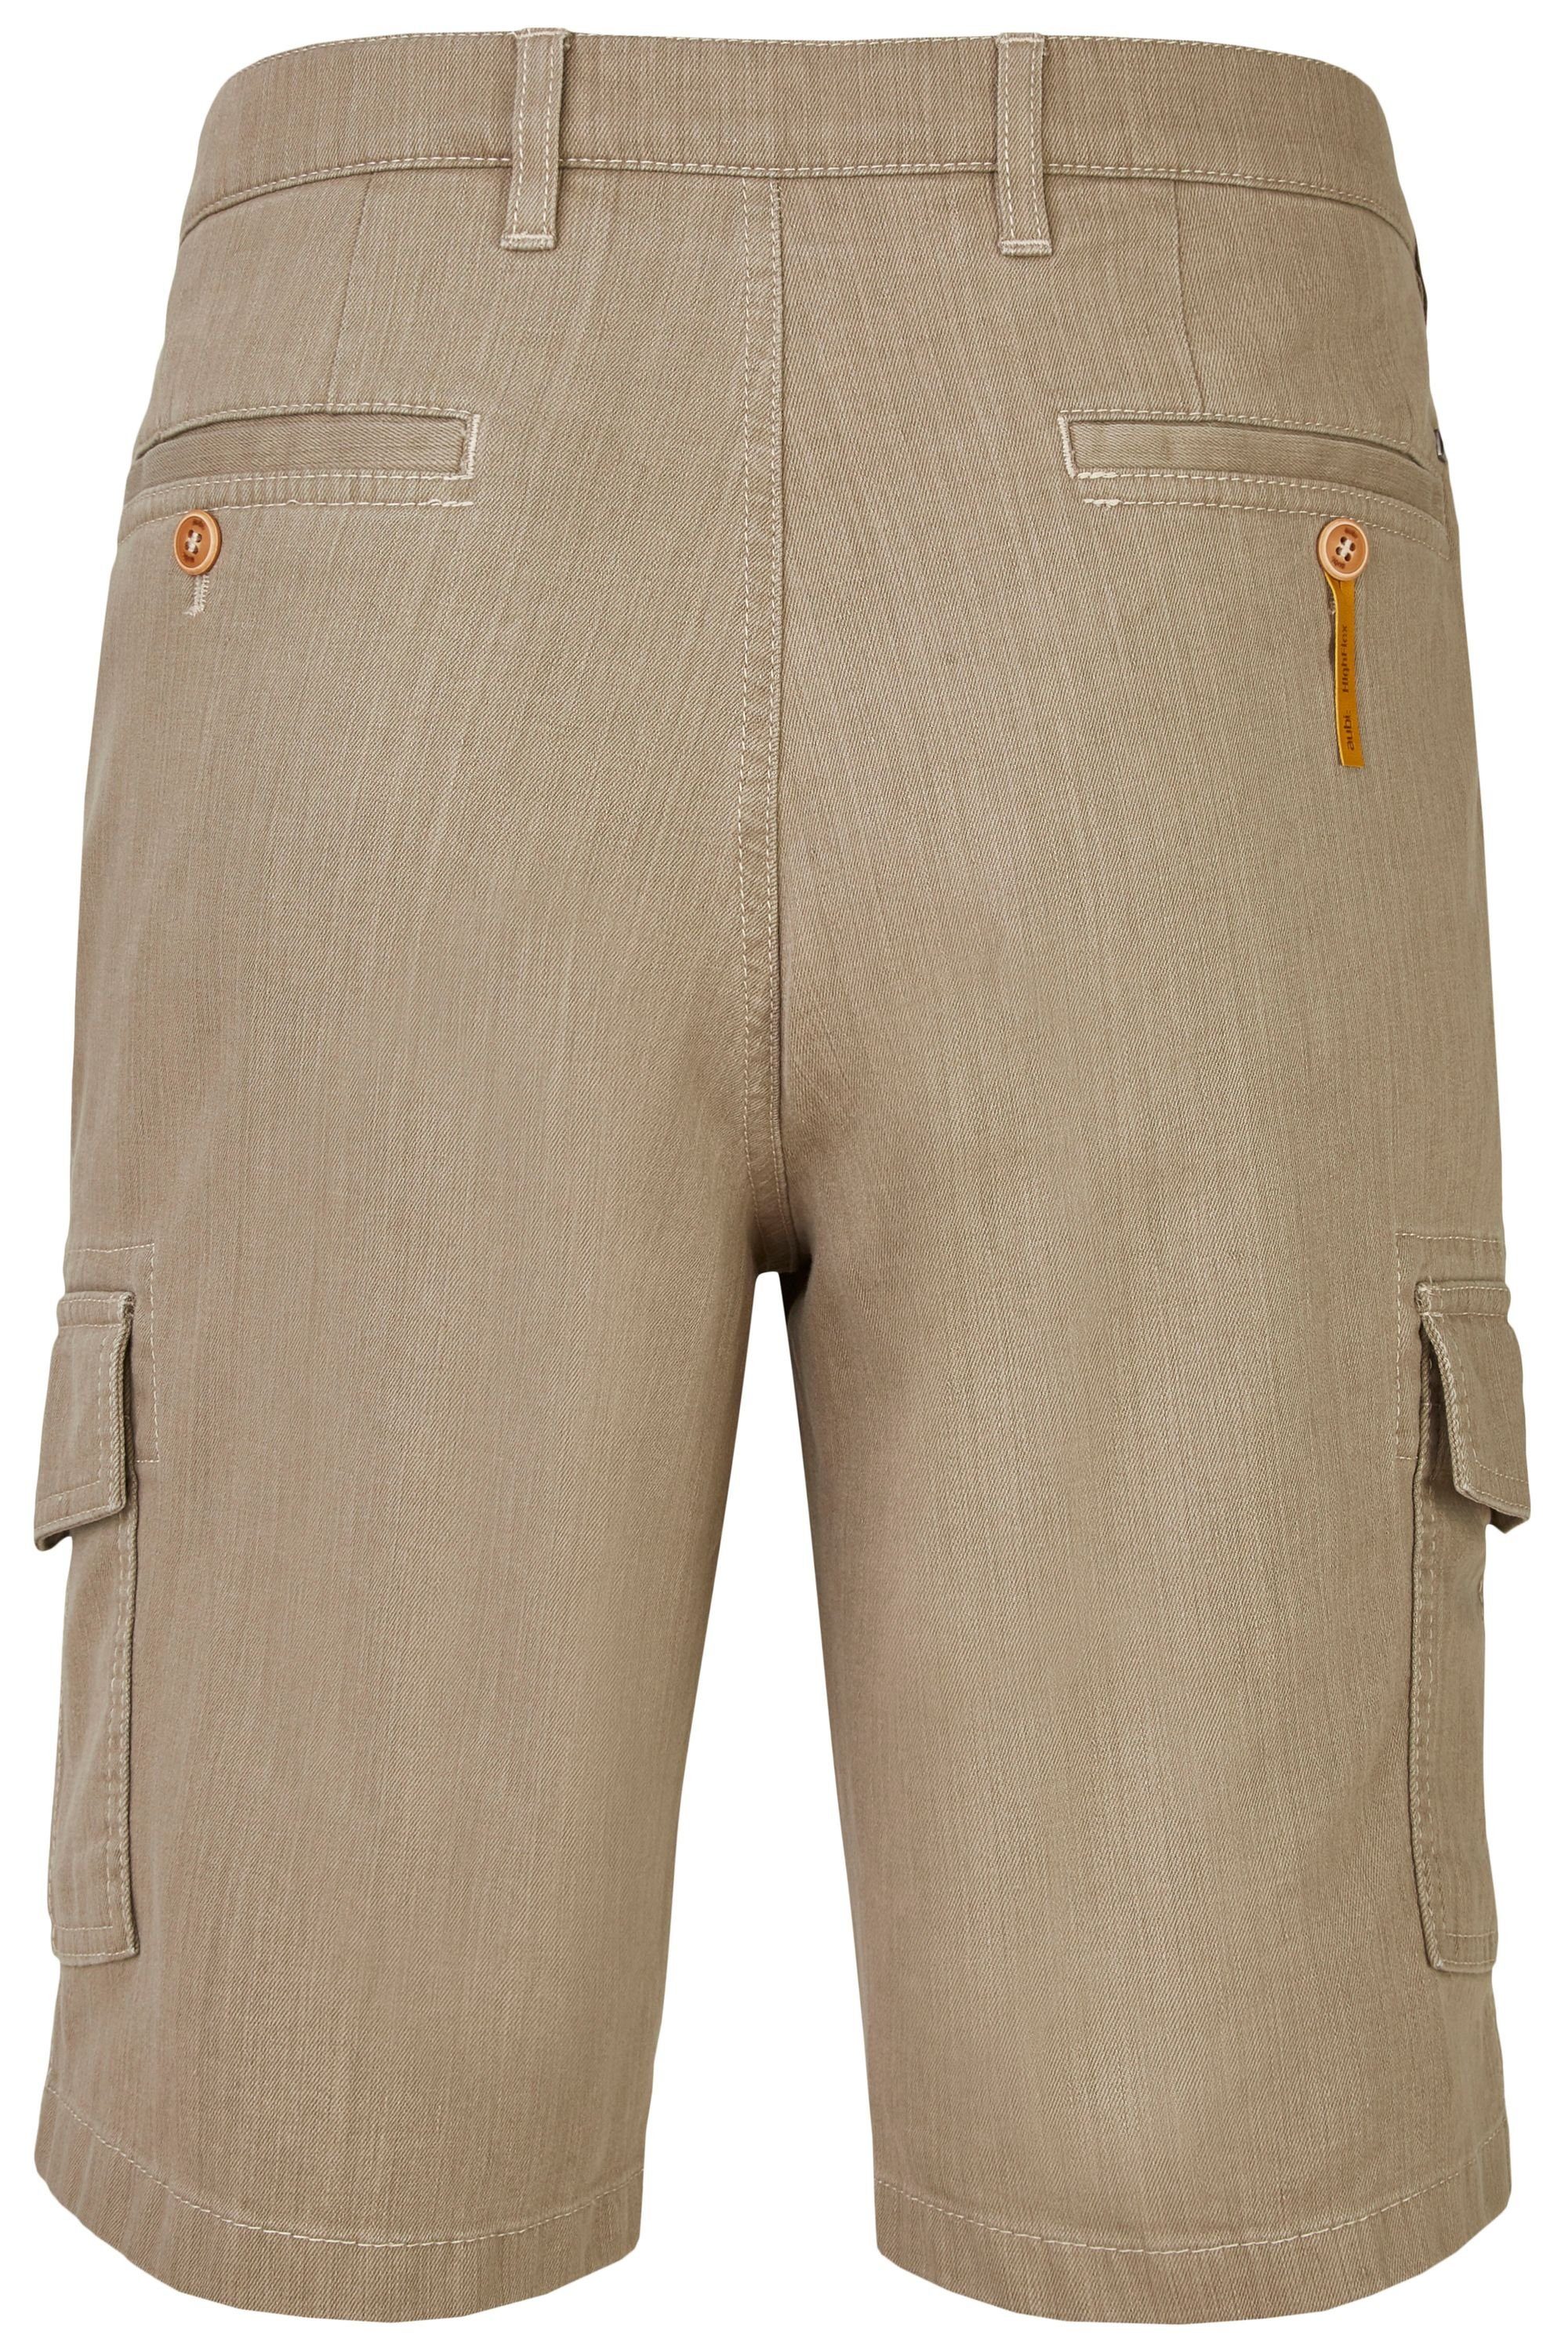 Flex 616 Sommer Bequeme Herren Stretch Cargo beige (21) Jeans Jeans High Perfect Baumwolle aubi Shorts aubi: aus Modell Fit